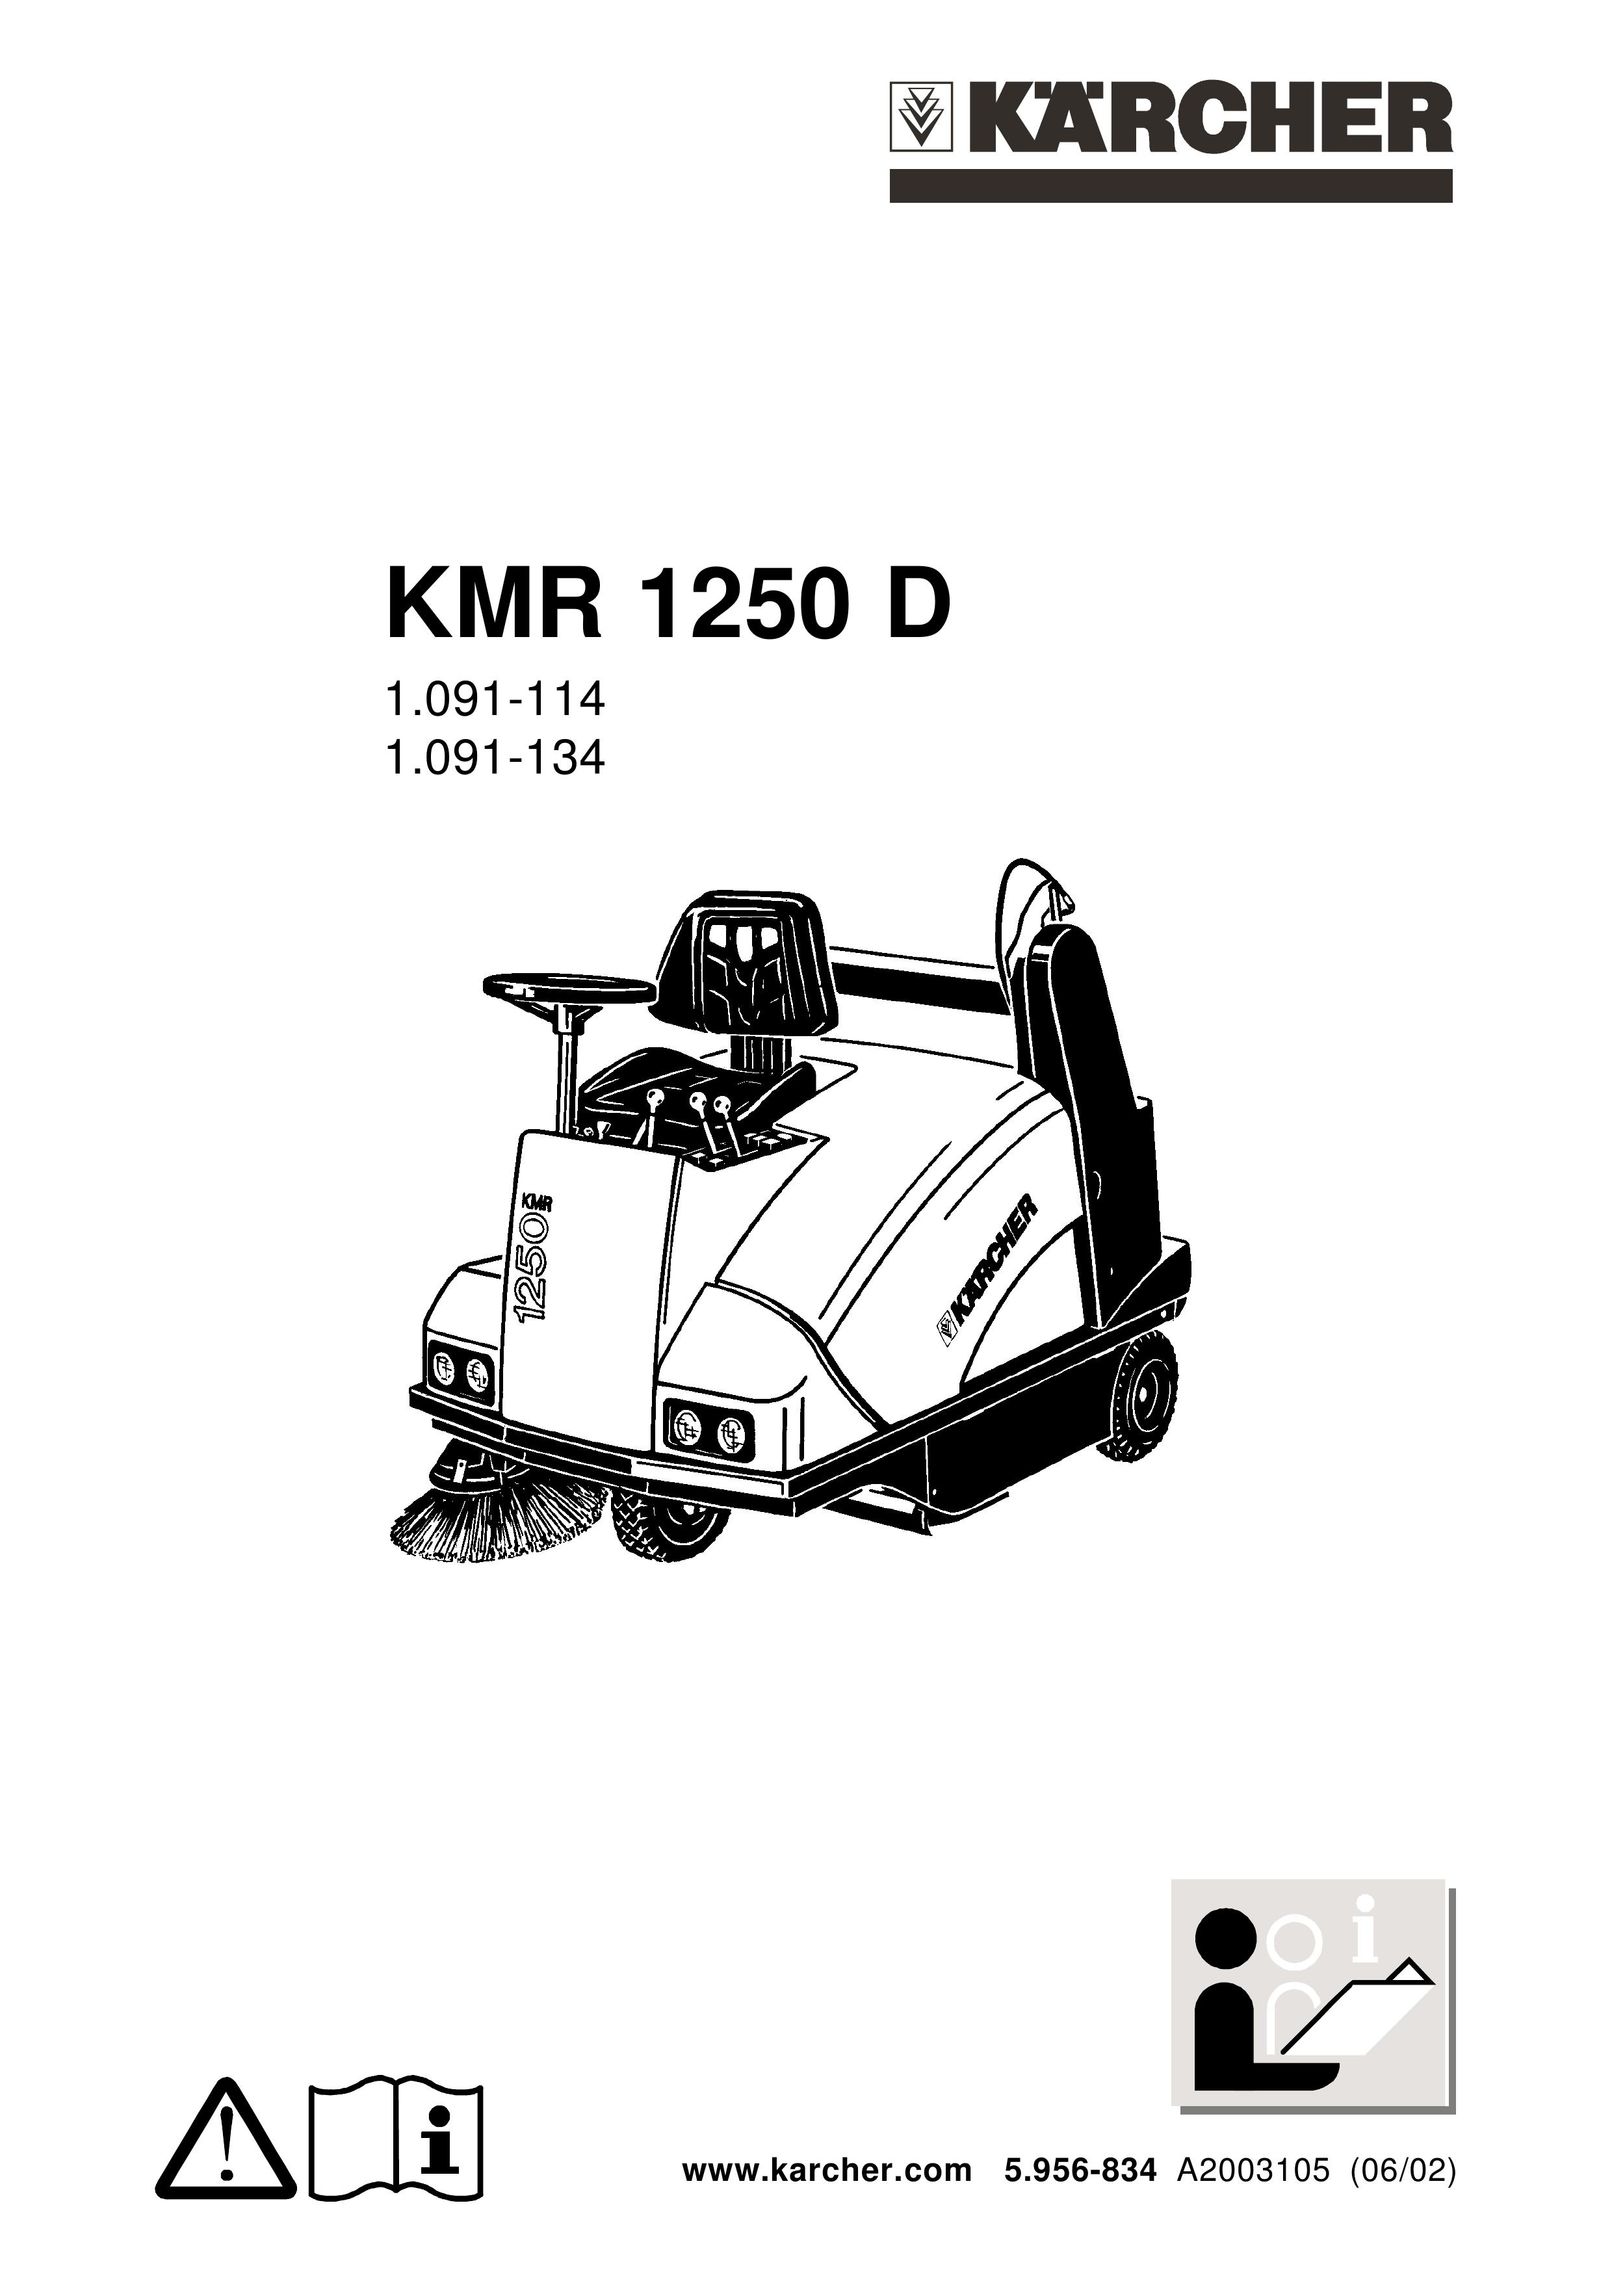 Karcher KMR 1250 D Vacuum Cleaner User Manual